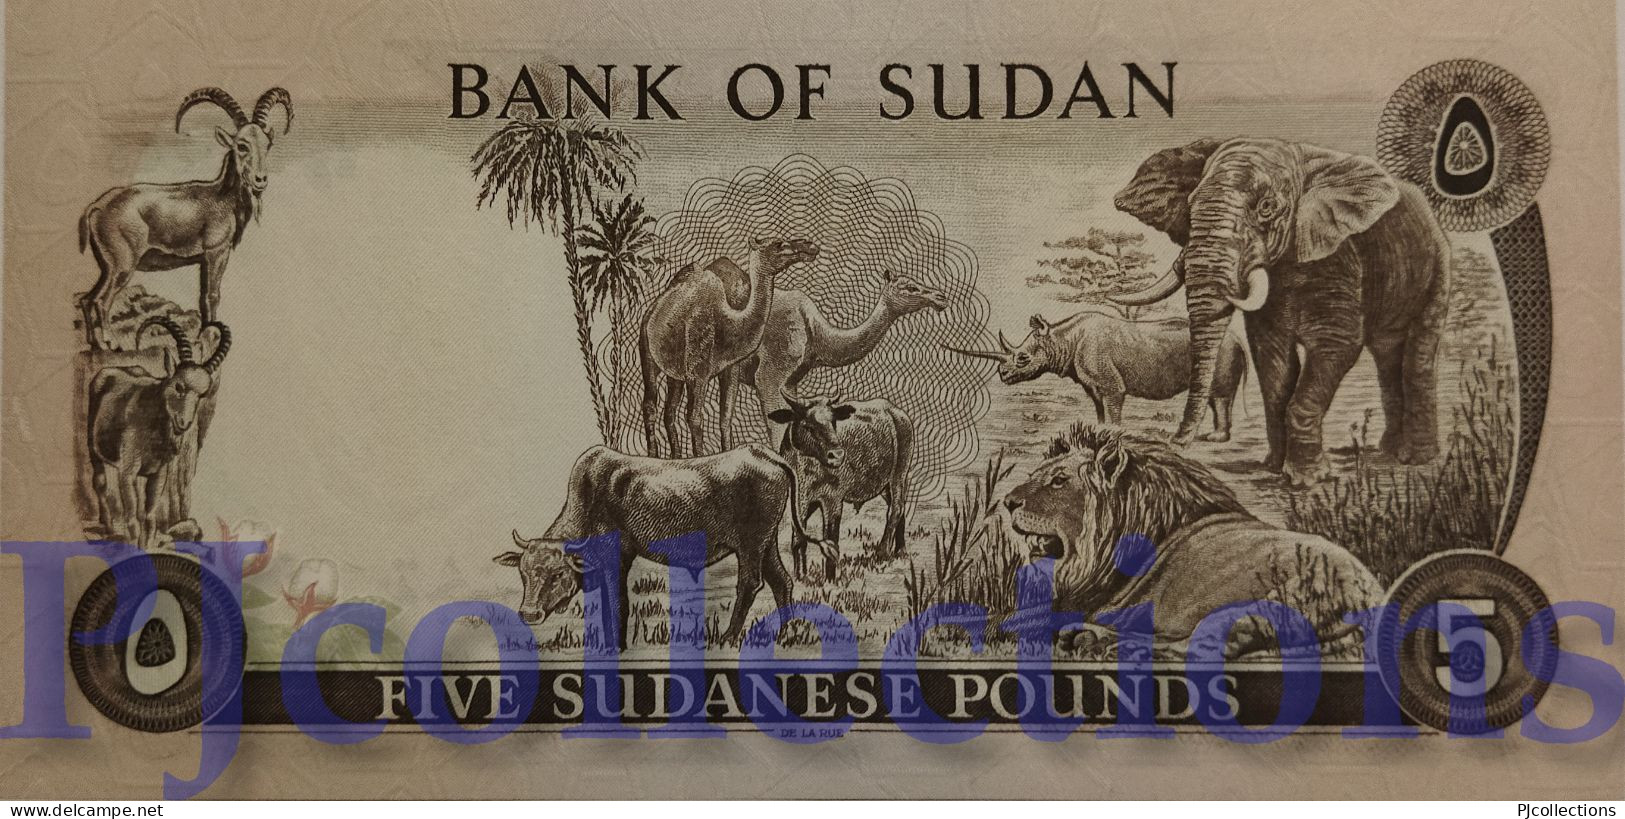 SUDAN 5 POUNDS 1980 PICK 14c UNC RARE - Soudan